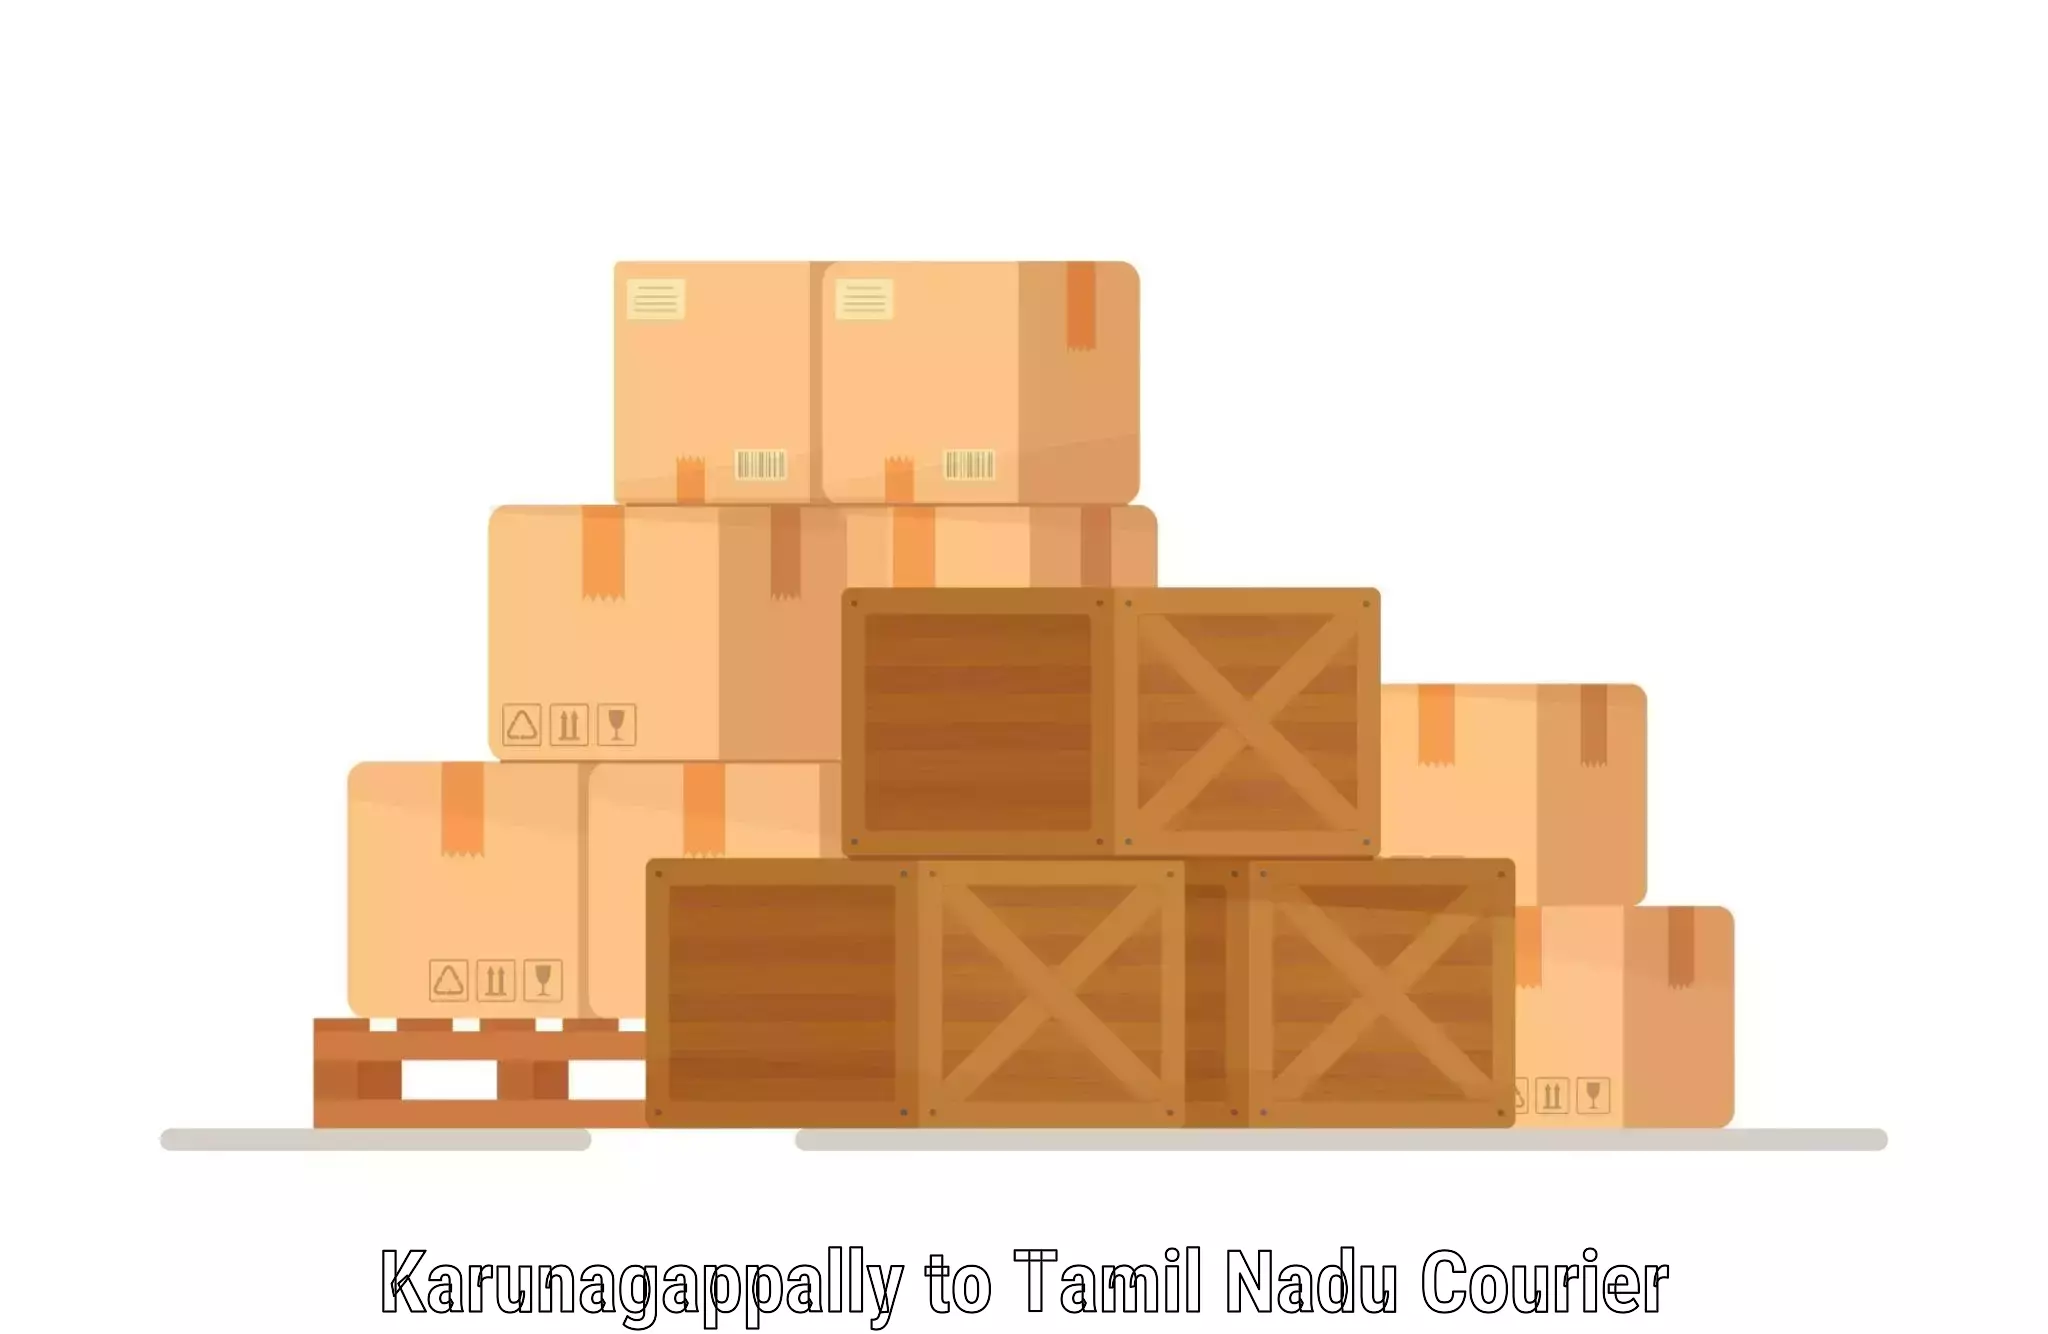 Multi-modal transportation Karunagappally to Tiruturaipundi